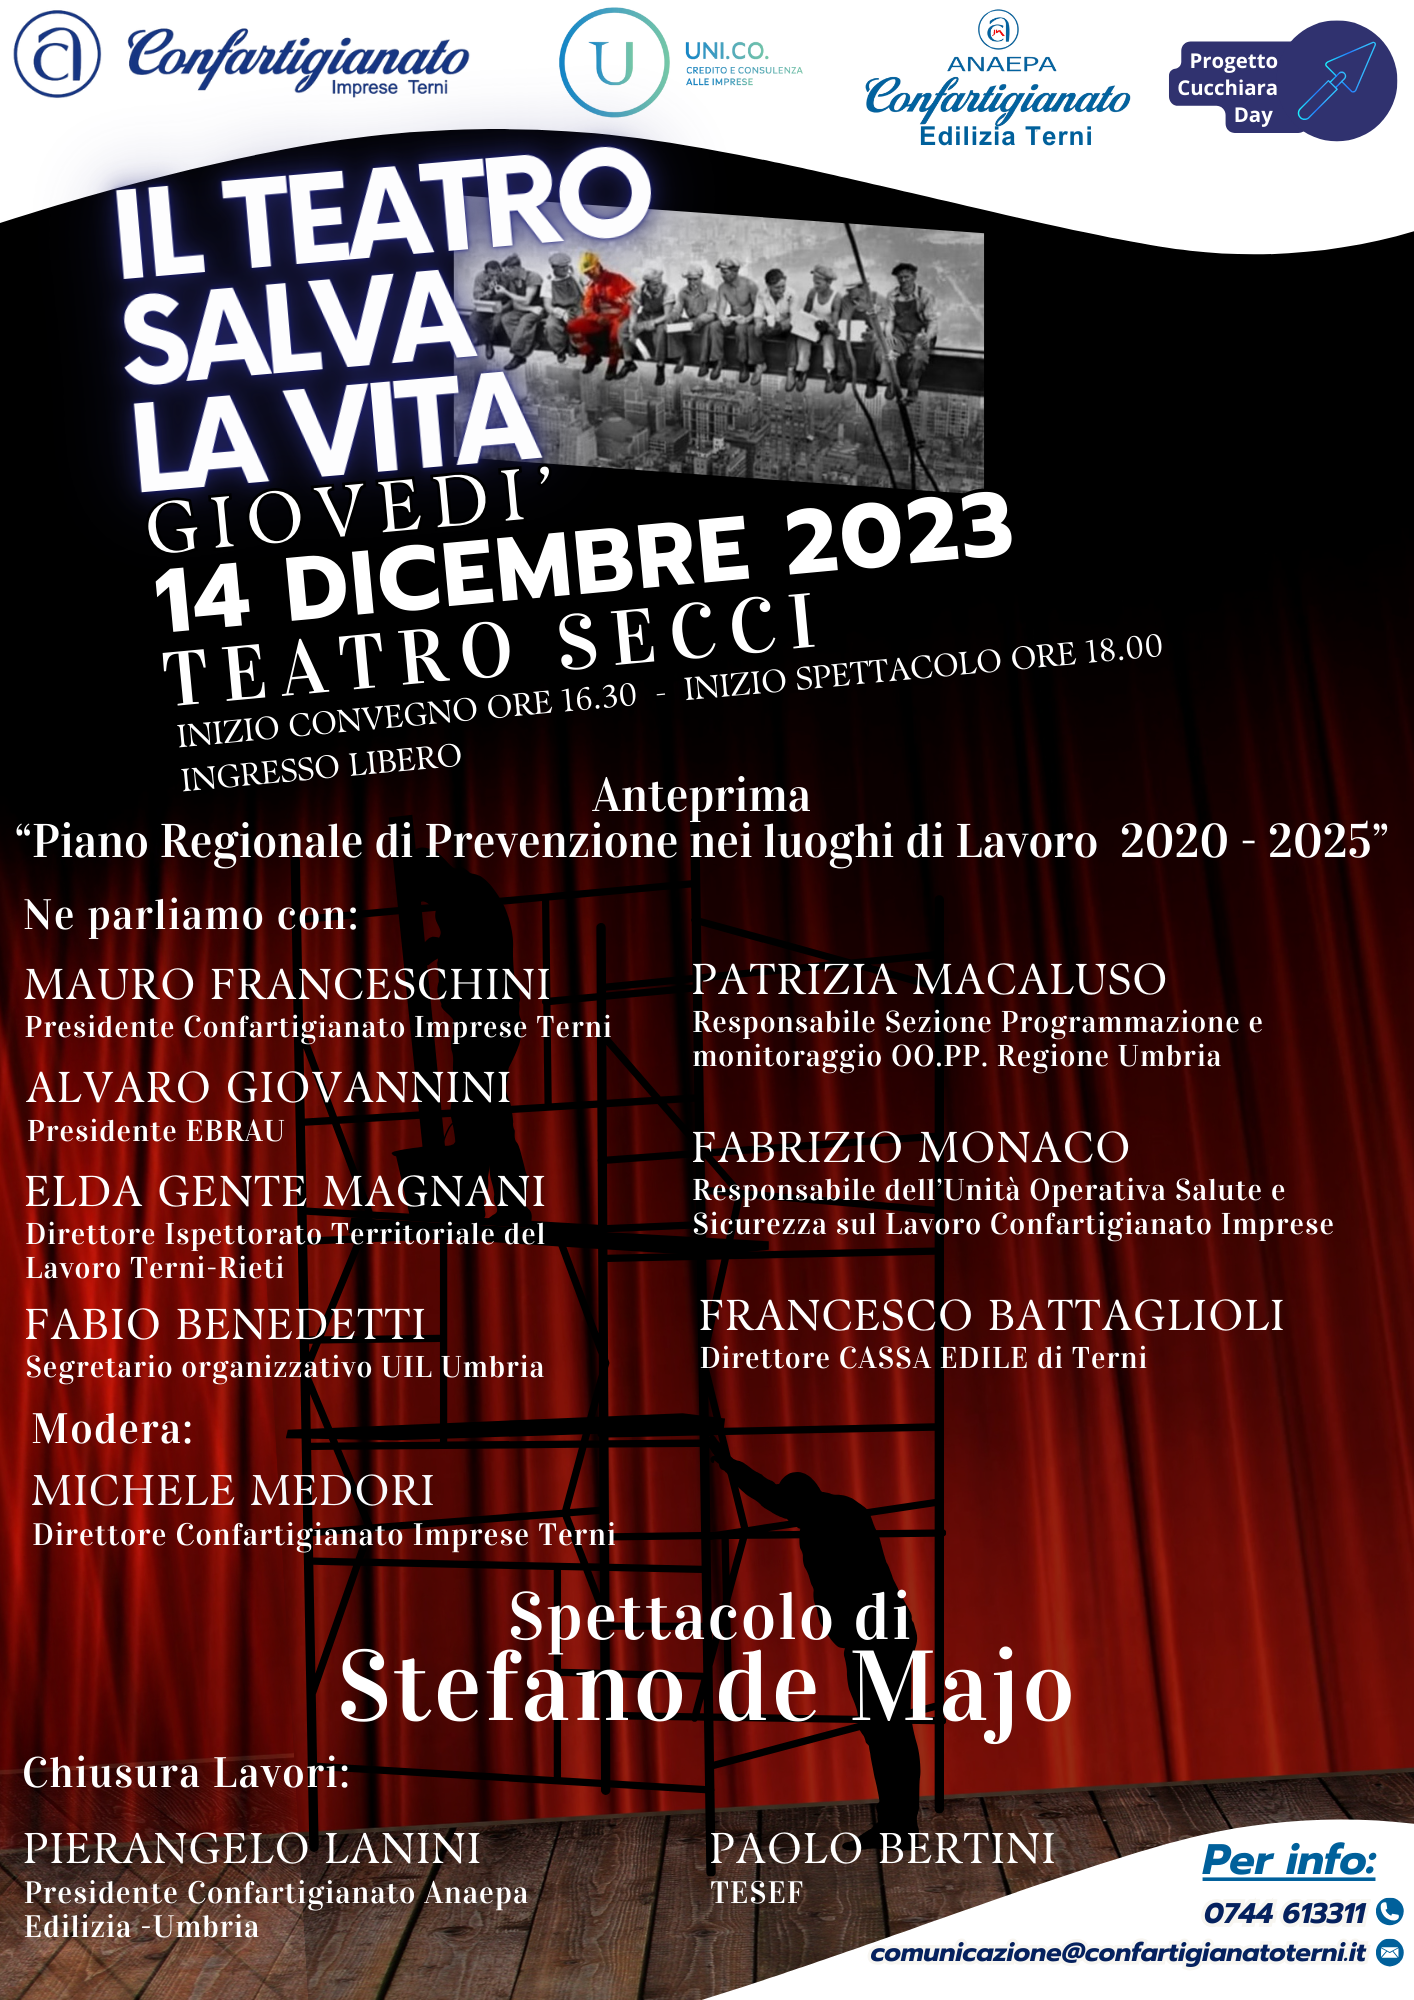 Al momento stai visualizzando “IL TEATRO SALVA LA VITA” 14 DICEMBRE 2023 Teatro Secci